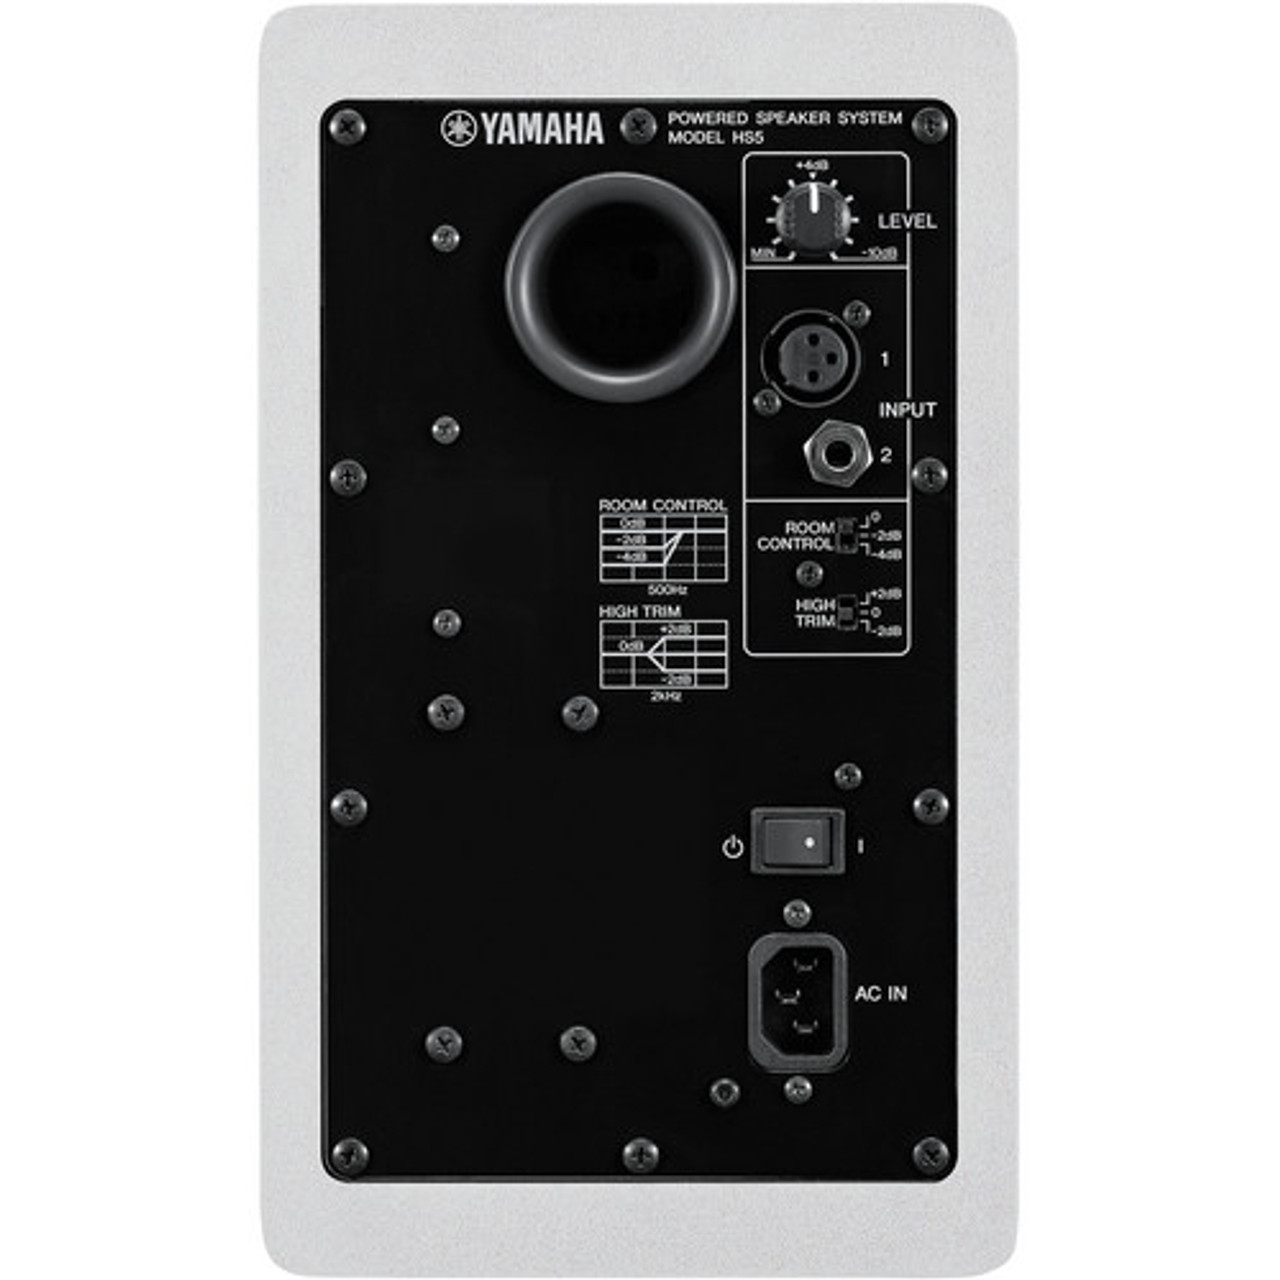 Yamaha HS5 Monitors Package